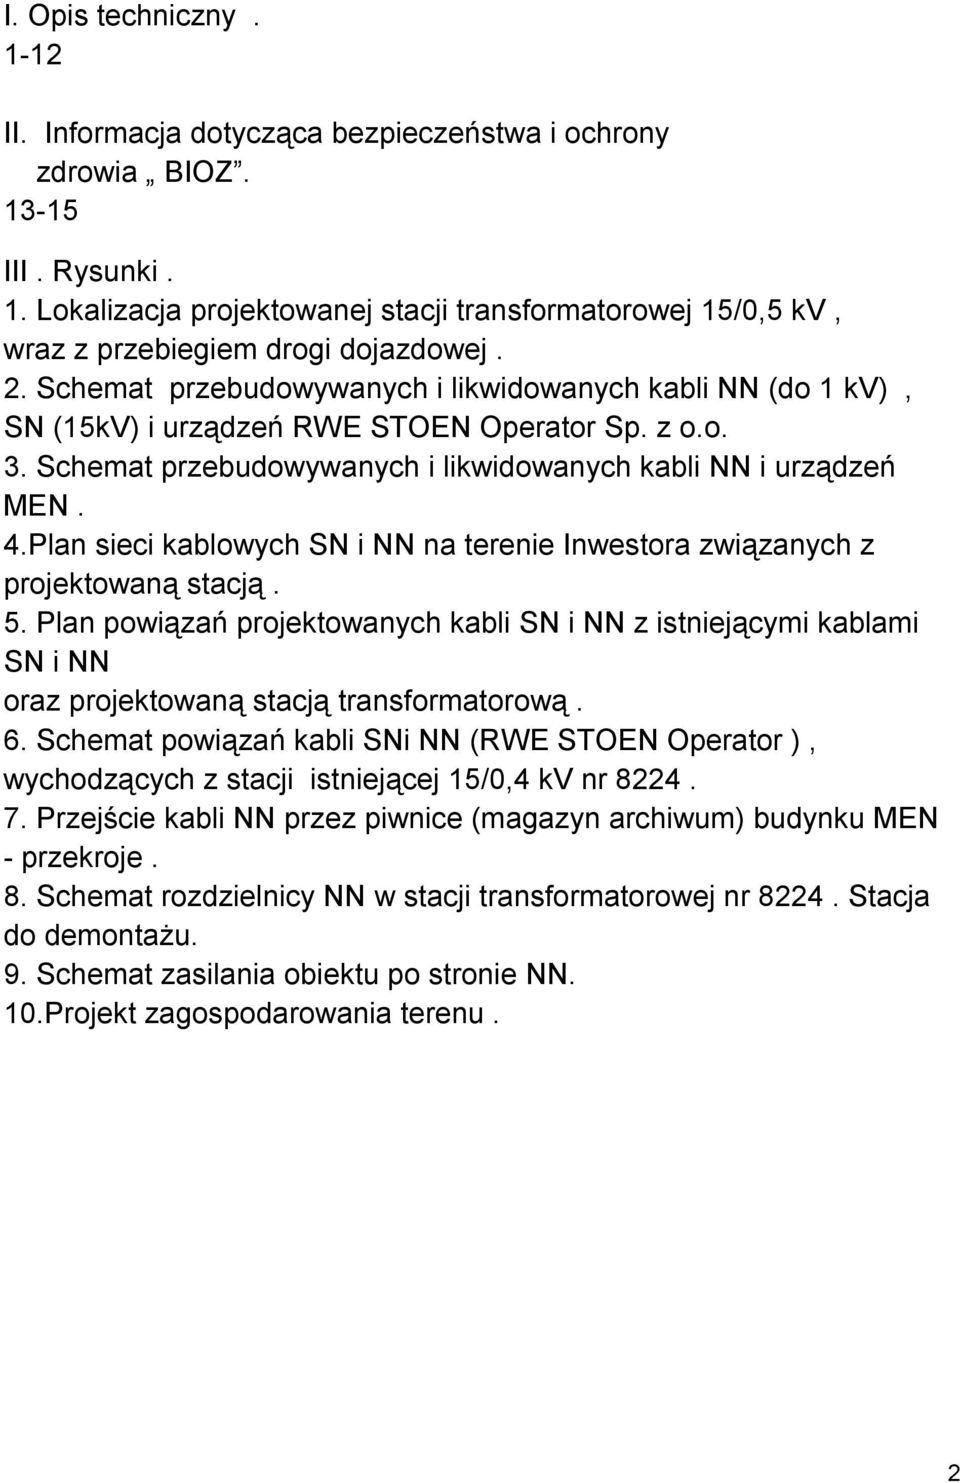 Plan sieci kablowych SN i NN na terenie Inwestora związanych z projektowaną stacją. 5.